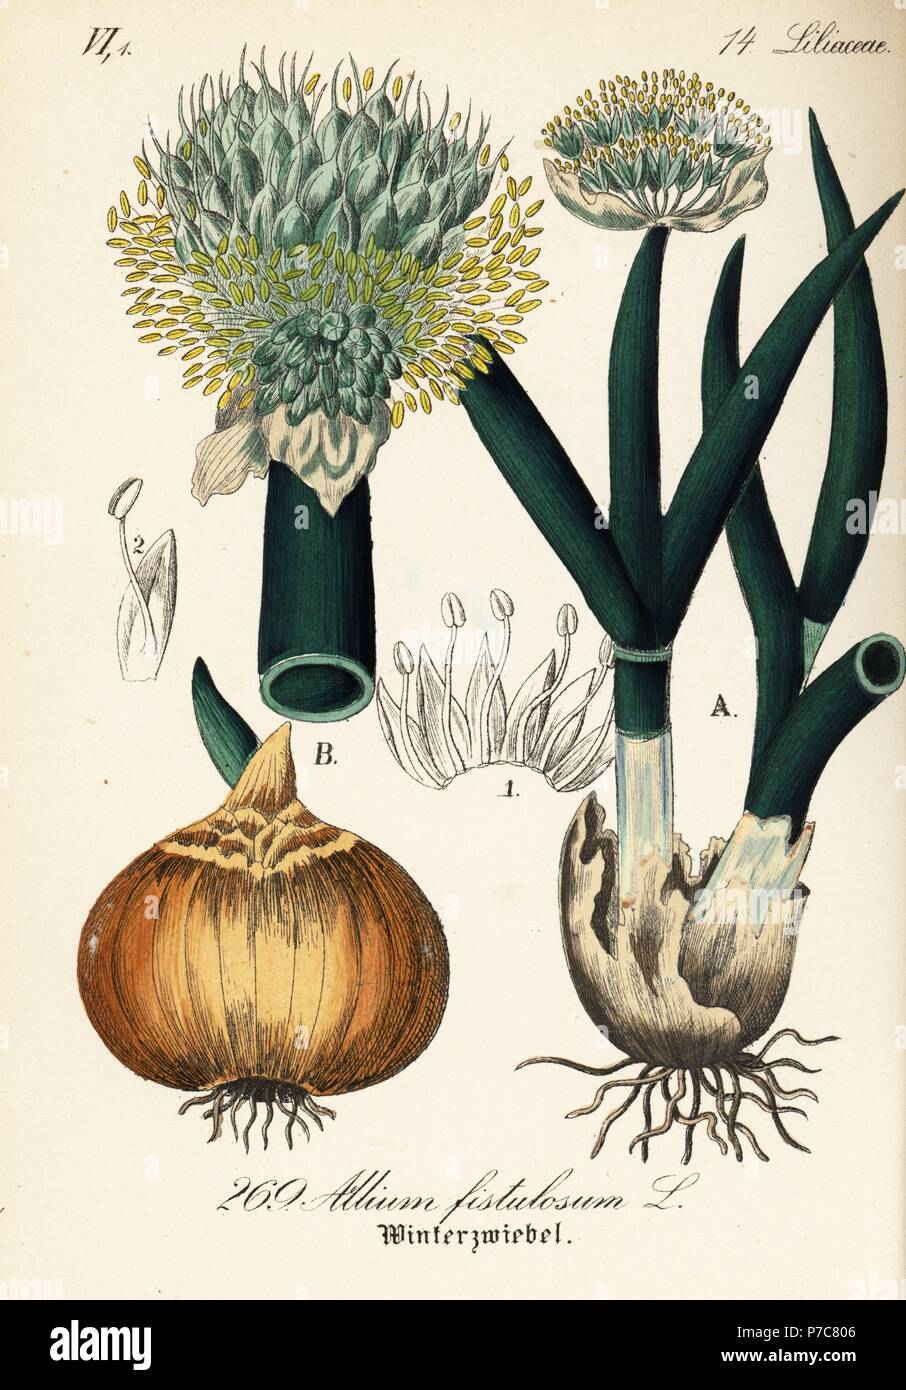 Welsh onion or Japanese bunching onion, Allium fistulosum. Handcoloured lithograph from Diederich von Schlechtendal's German Flora (Flora von Deutschland), Jena, 1871. Stock Photo